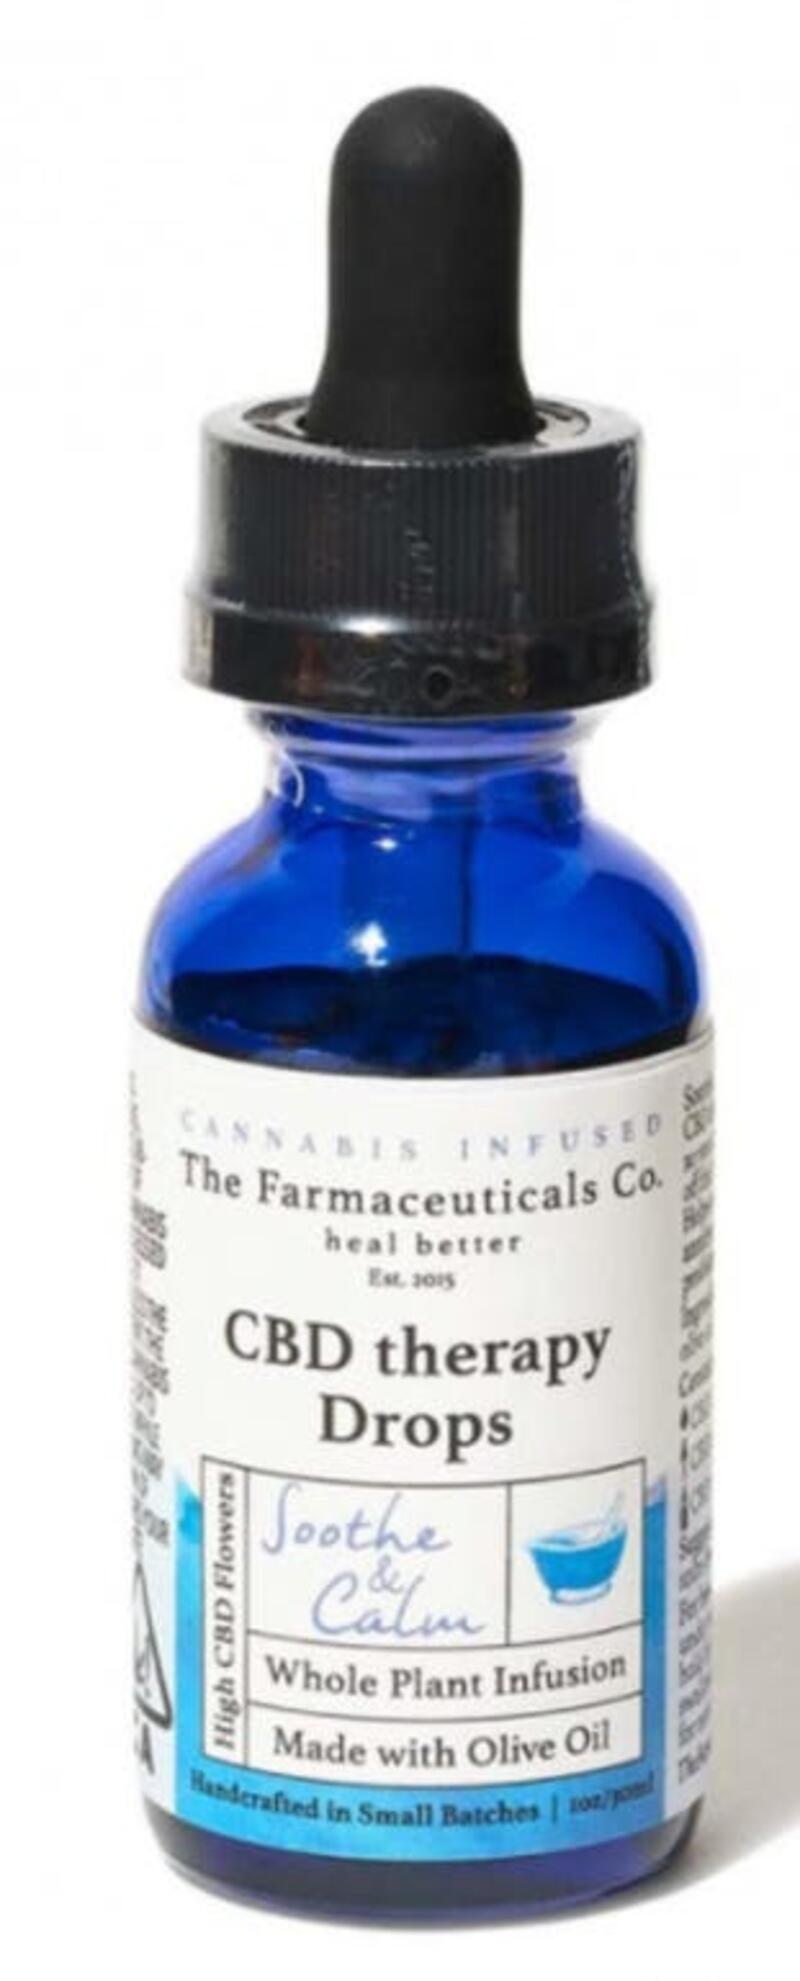 Farmaceuticals Co - 12:1 CBD Therapy Drops - Tincture 30ml